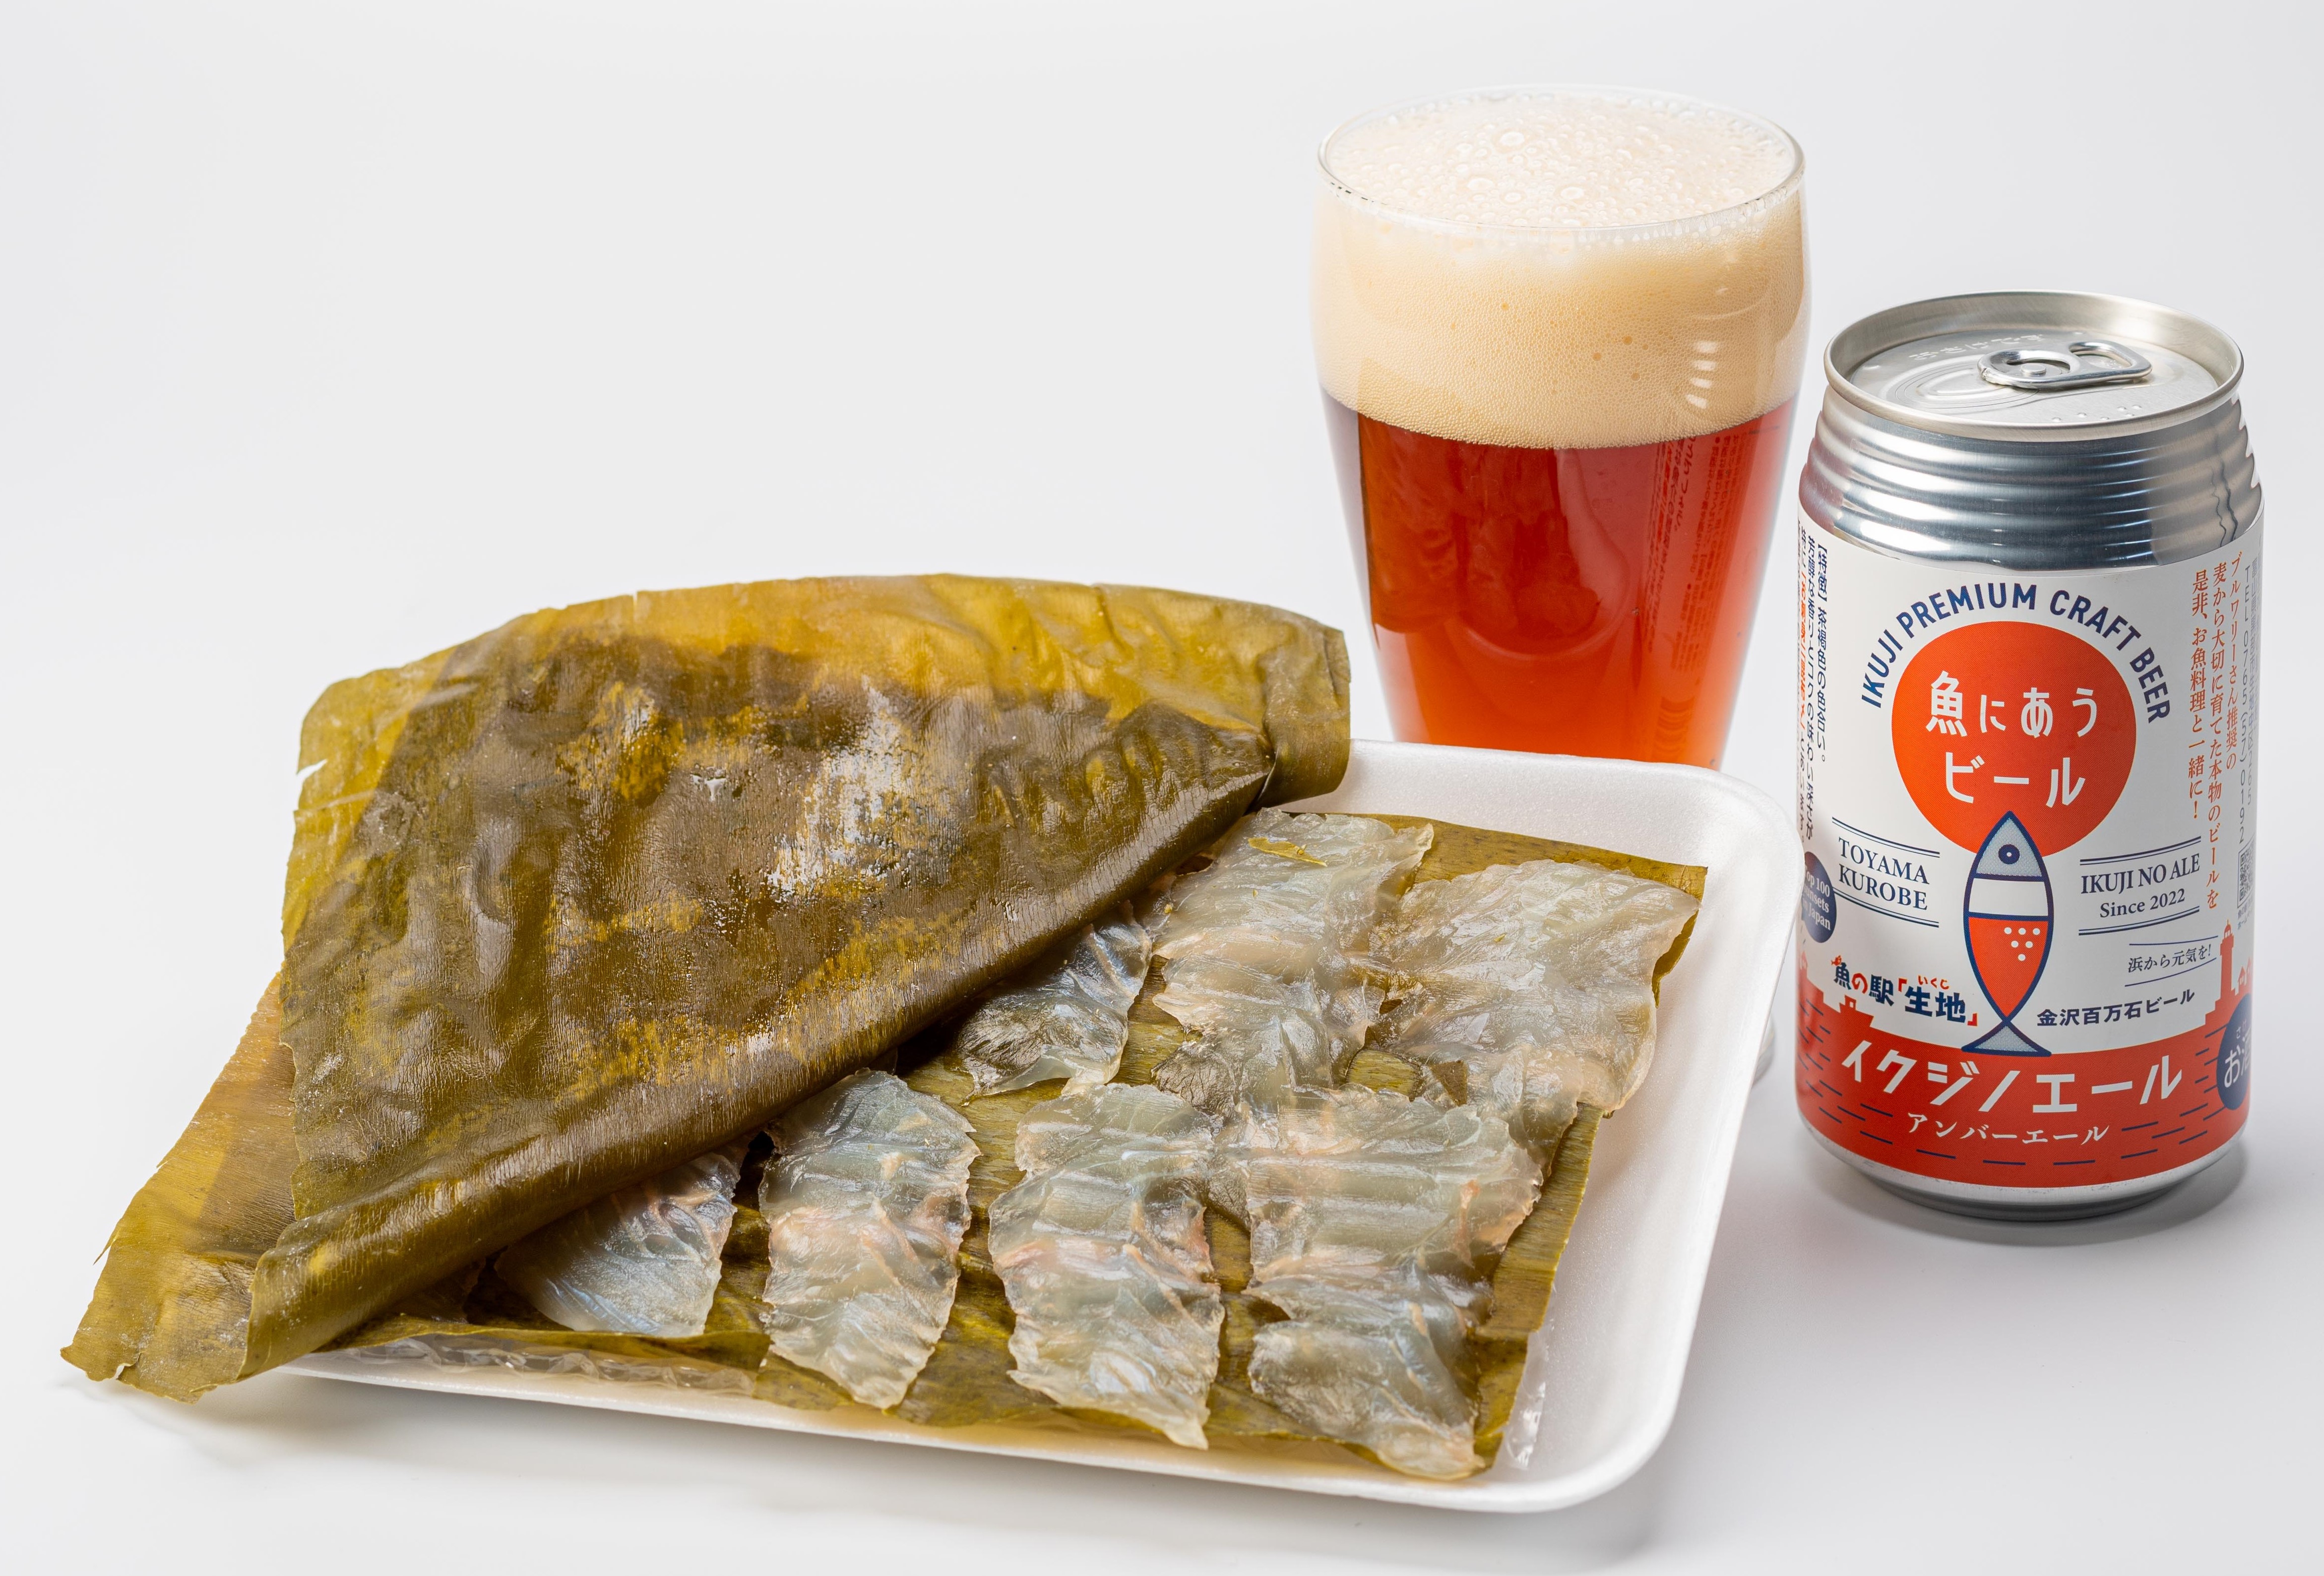 昆布締め2種と魚に合うビール（イクジのエール）2本のセット